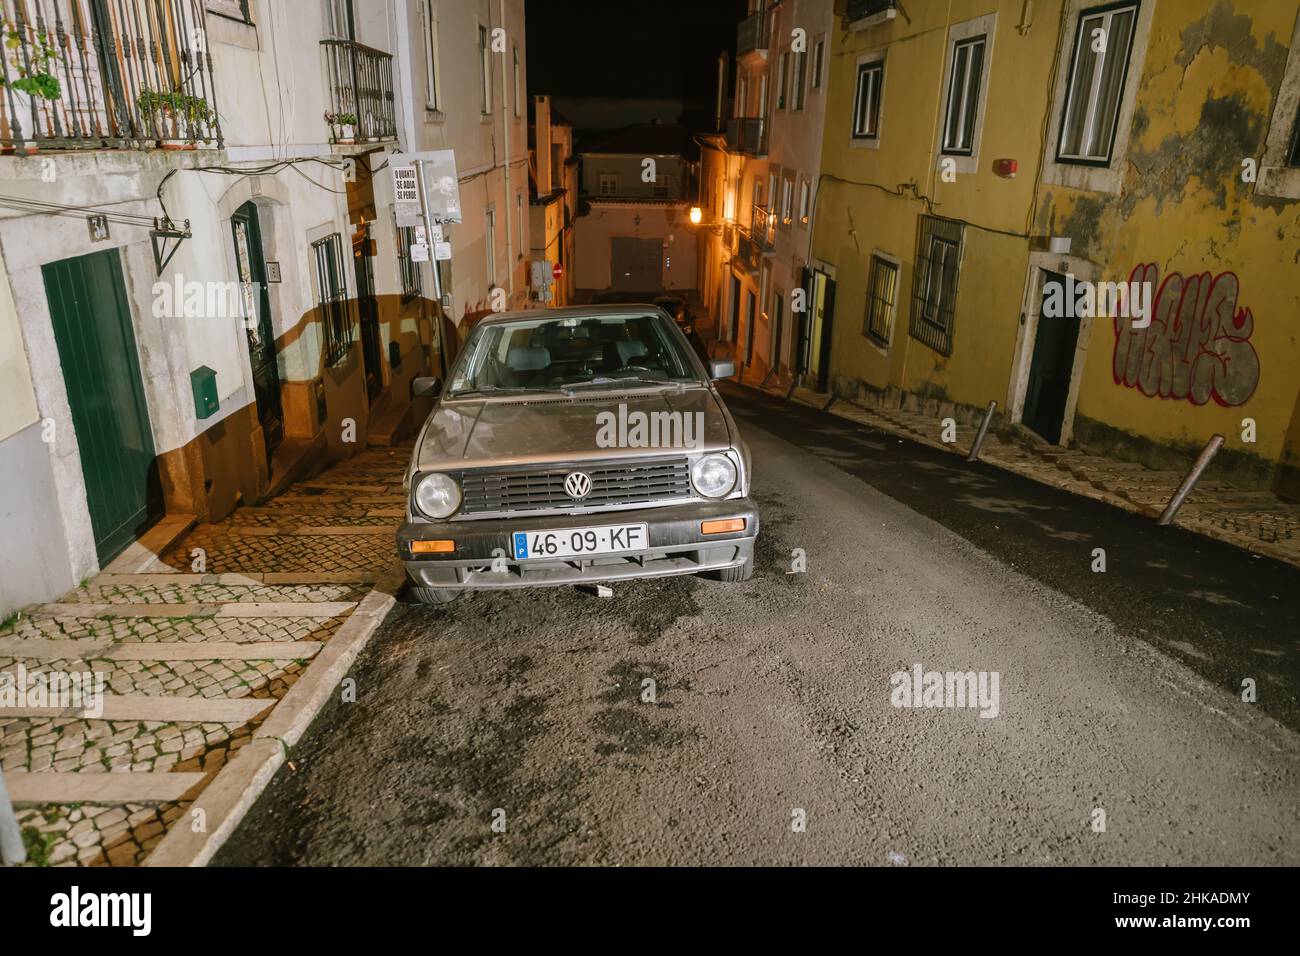 Lisbonne, Portugal - 2 février 2018: Vue de face de l'olf Volskwagen VW diesl voiture de golf garée sur une rusitc vieille rue vintage dans le centre de Lisbonne - nuit avec de longues ombres Banque D'Images